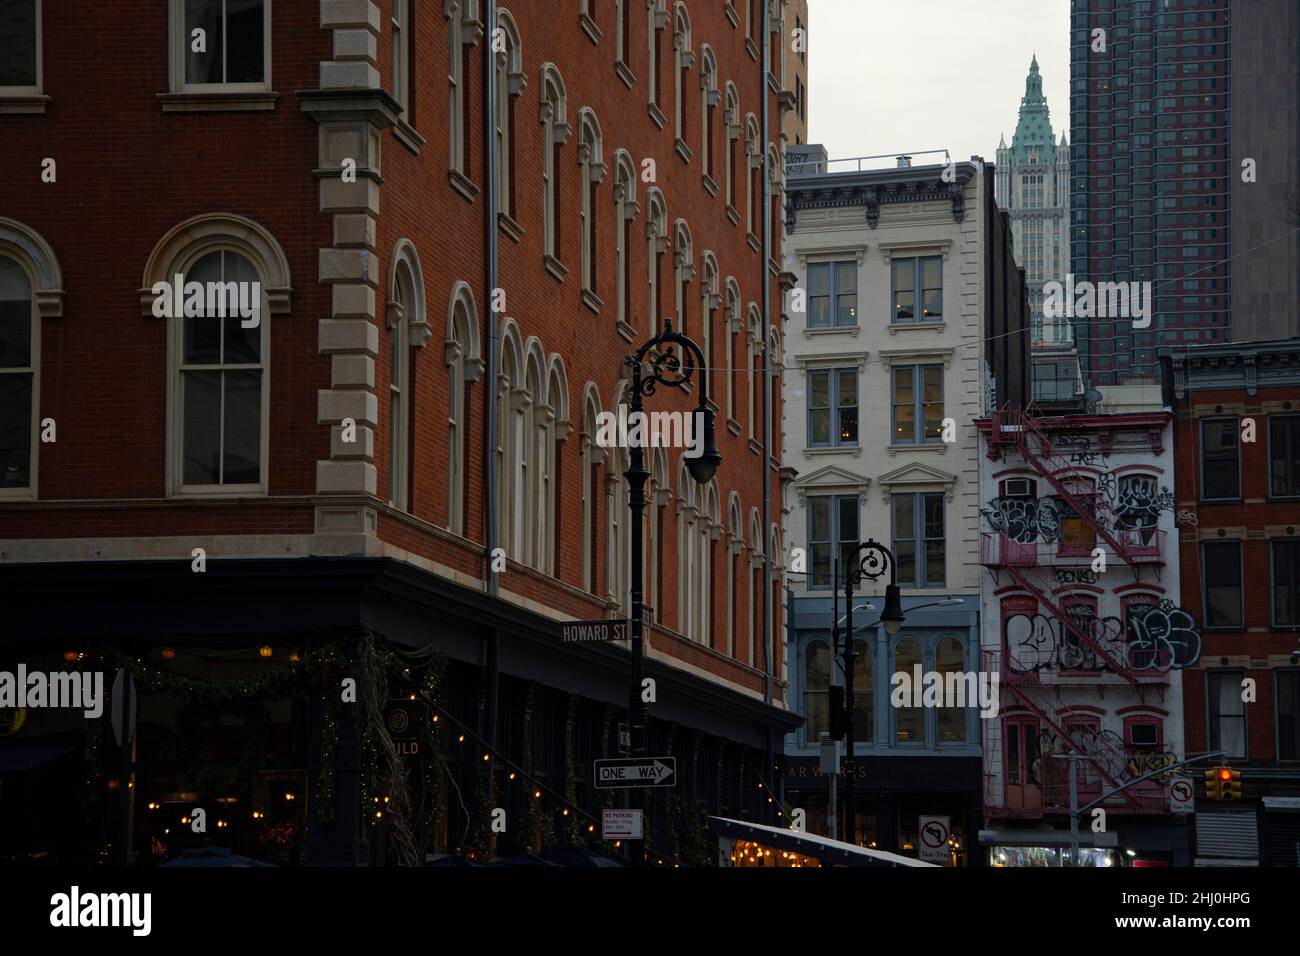 New Yorks trendiges Sohoquartier, ein bunter Mix zwischen alt und neu Stock Photo